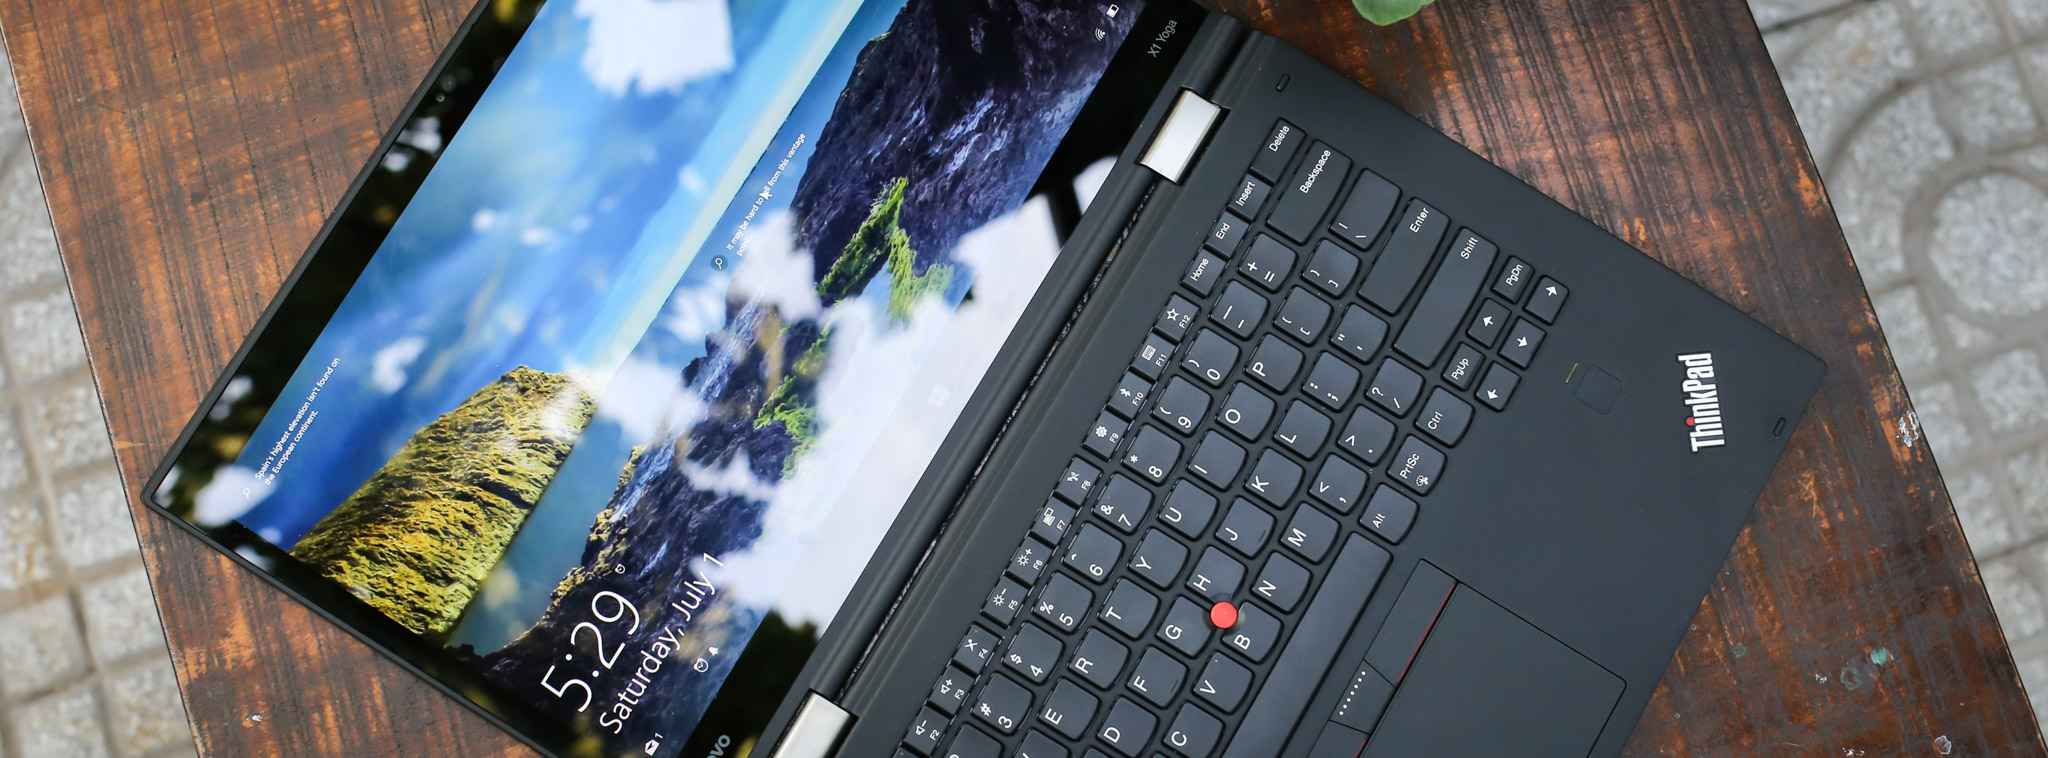 Đánh giá ThinkPad X1 Yoga: màn hình OLED tuyệt vời, hiệu năng tốt, pin trung bình, giá cao [HOT]